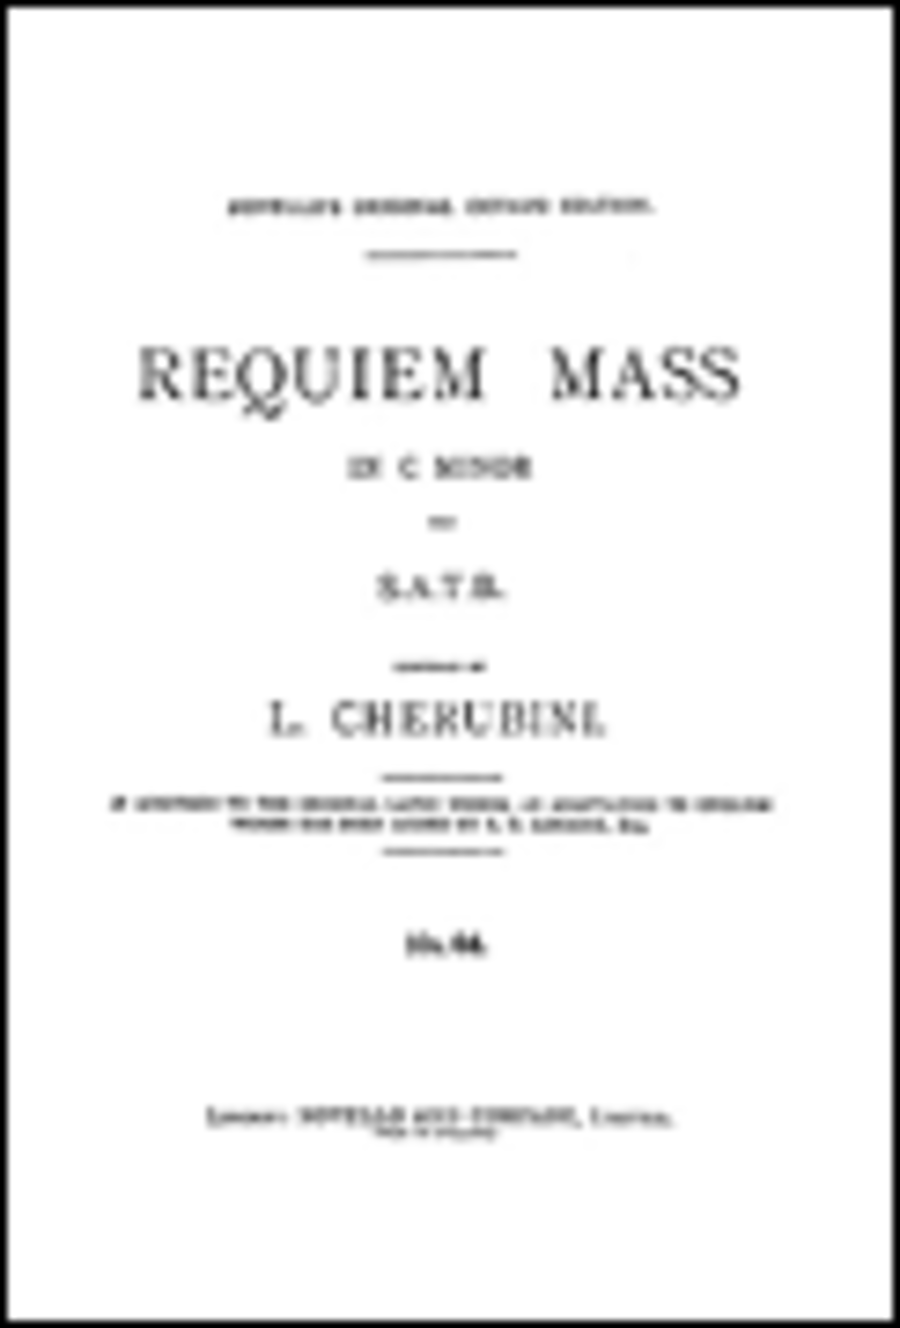 Luigi Cherubini: Requiem Mass In C Minor (Vocal Score)